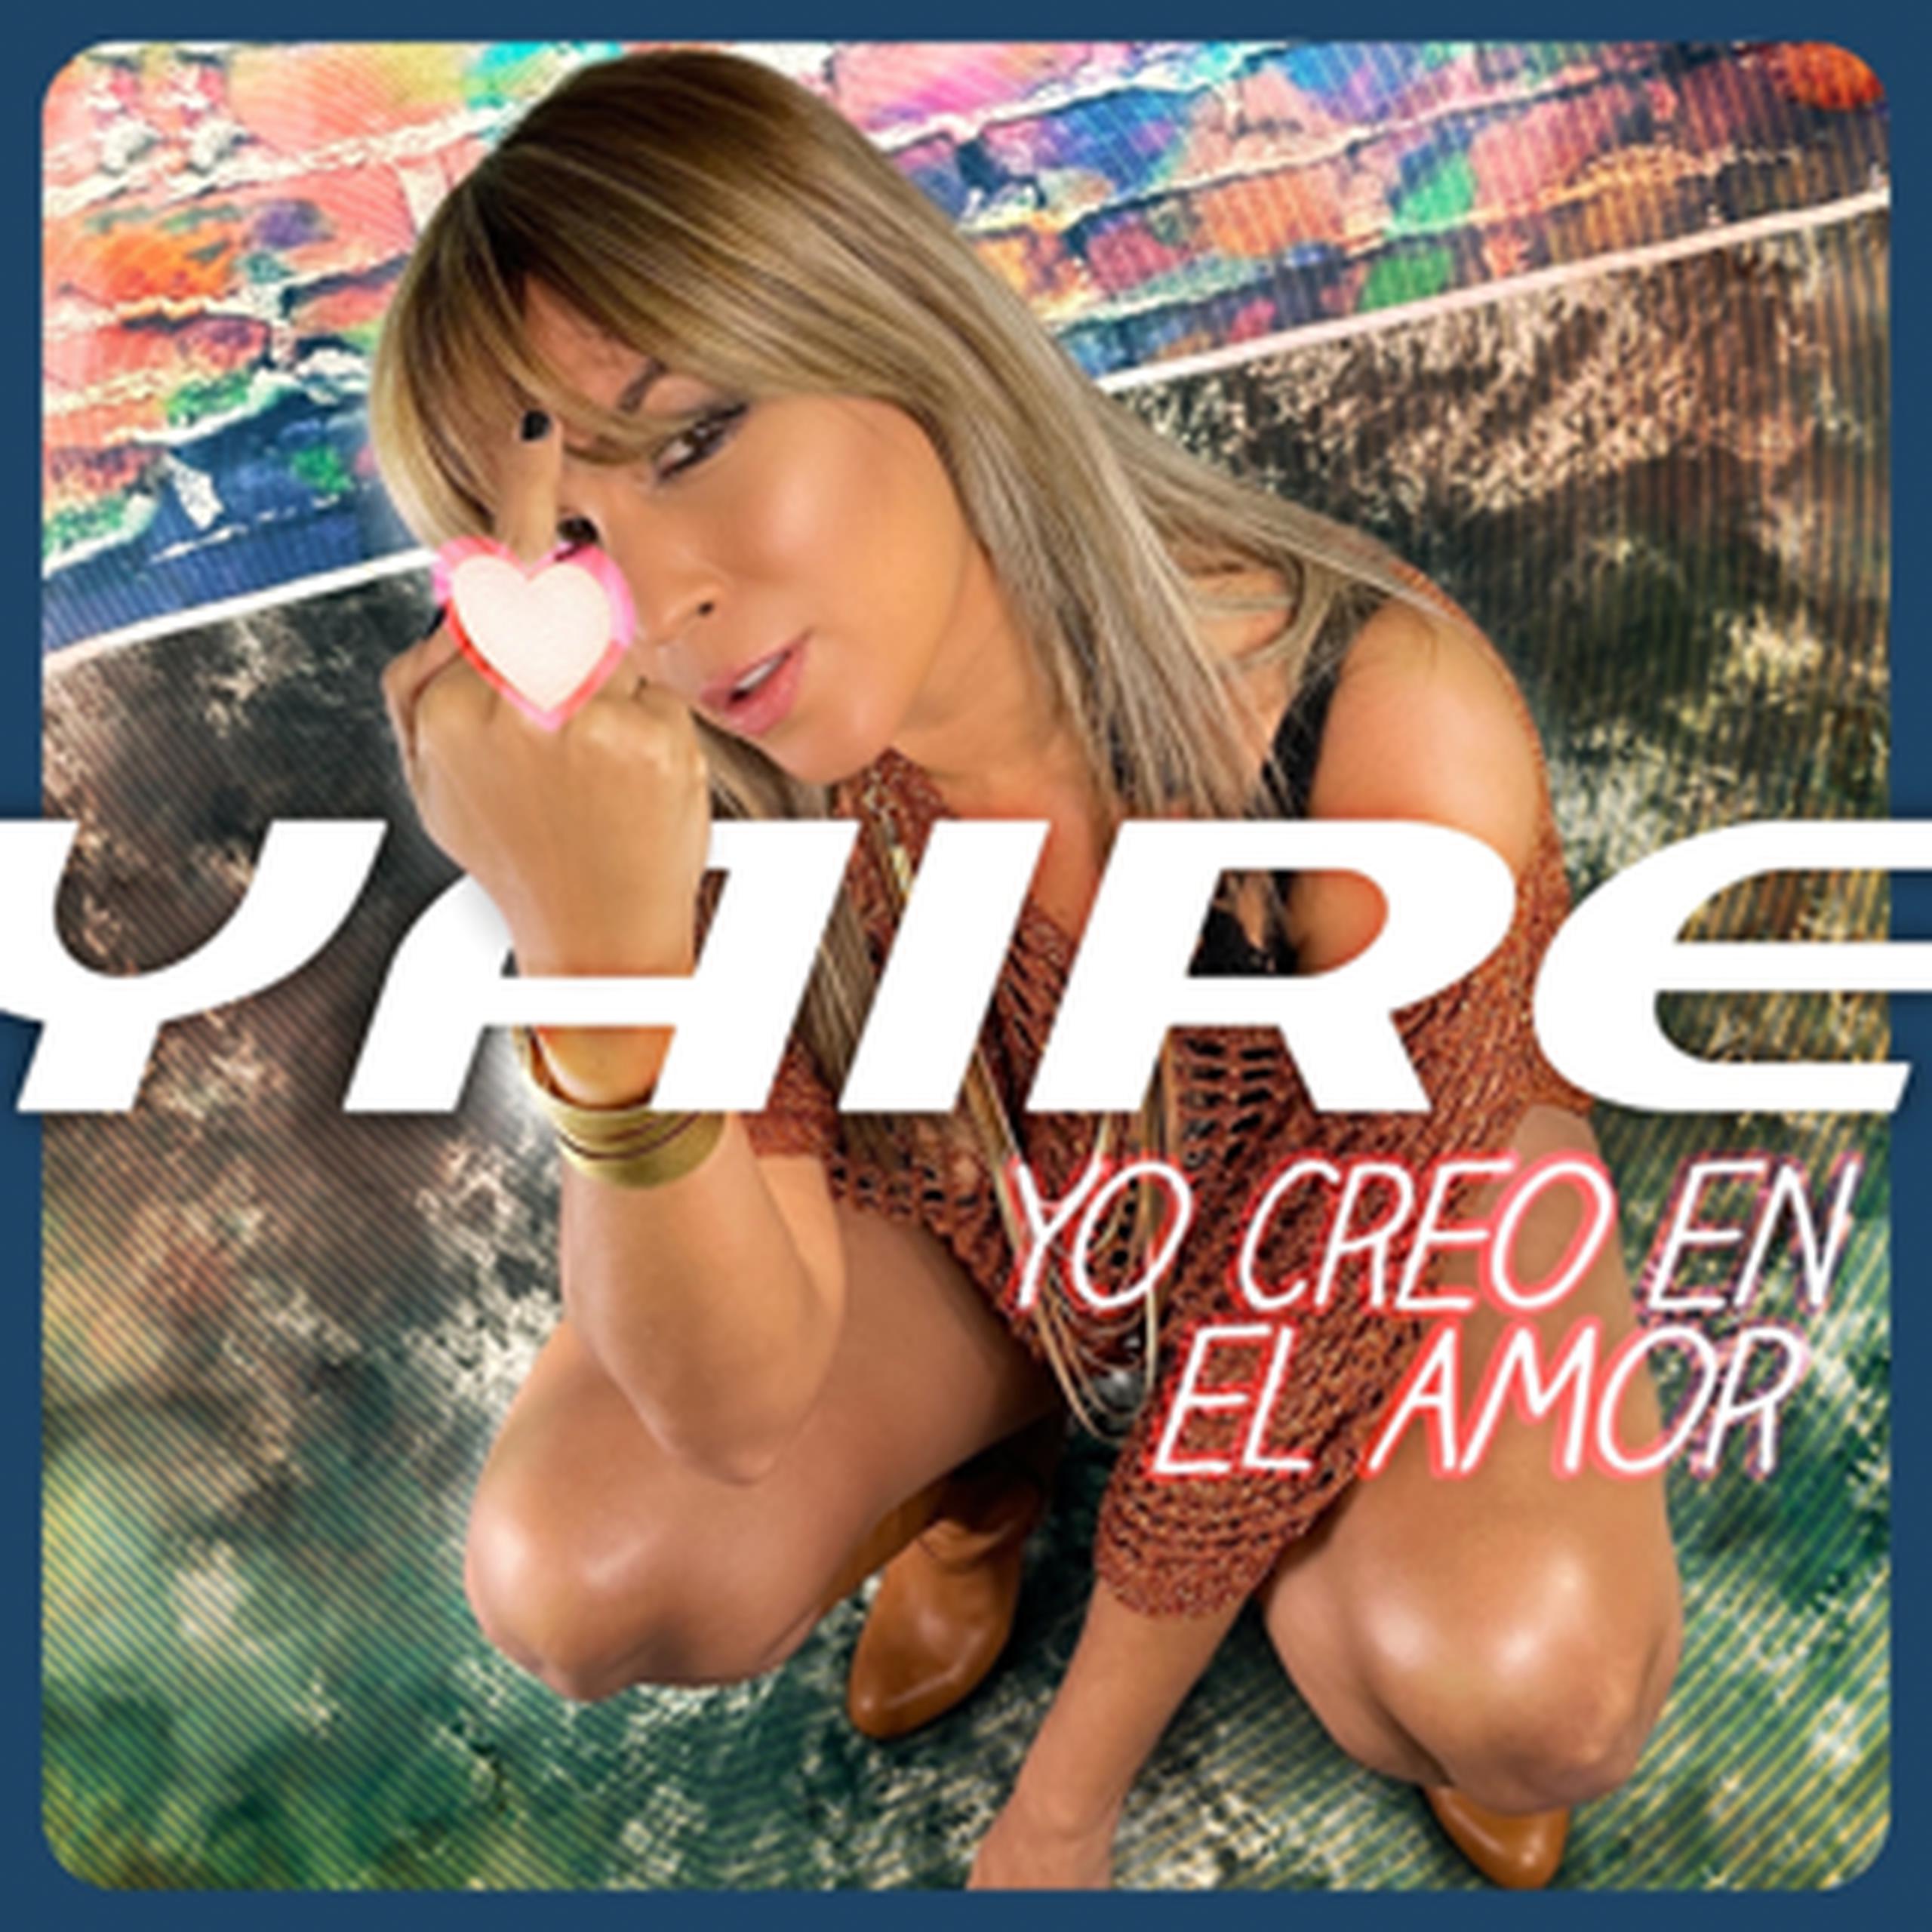 Imagen de promoción del tema "Yo creo en el amor" de Yaire.